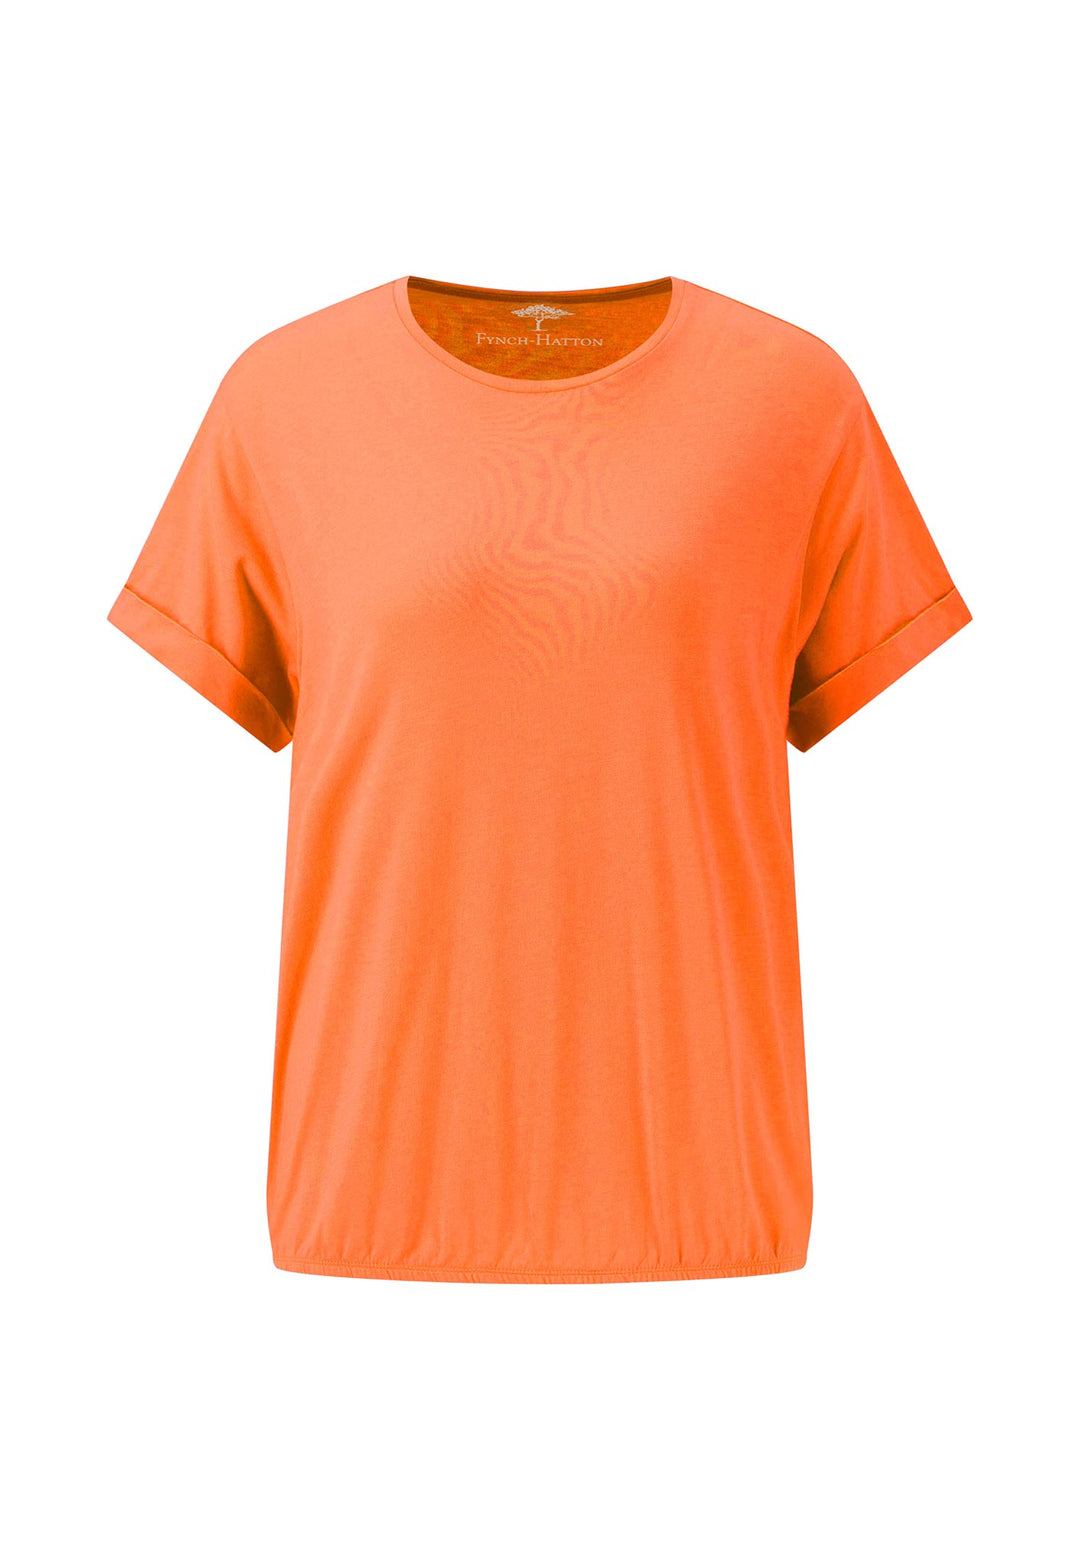 Saum Shop FYNCH-HATTON T-Shirt – Online gerafftem | mit Offizieller